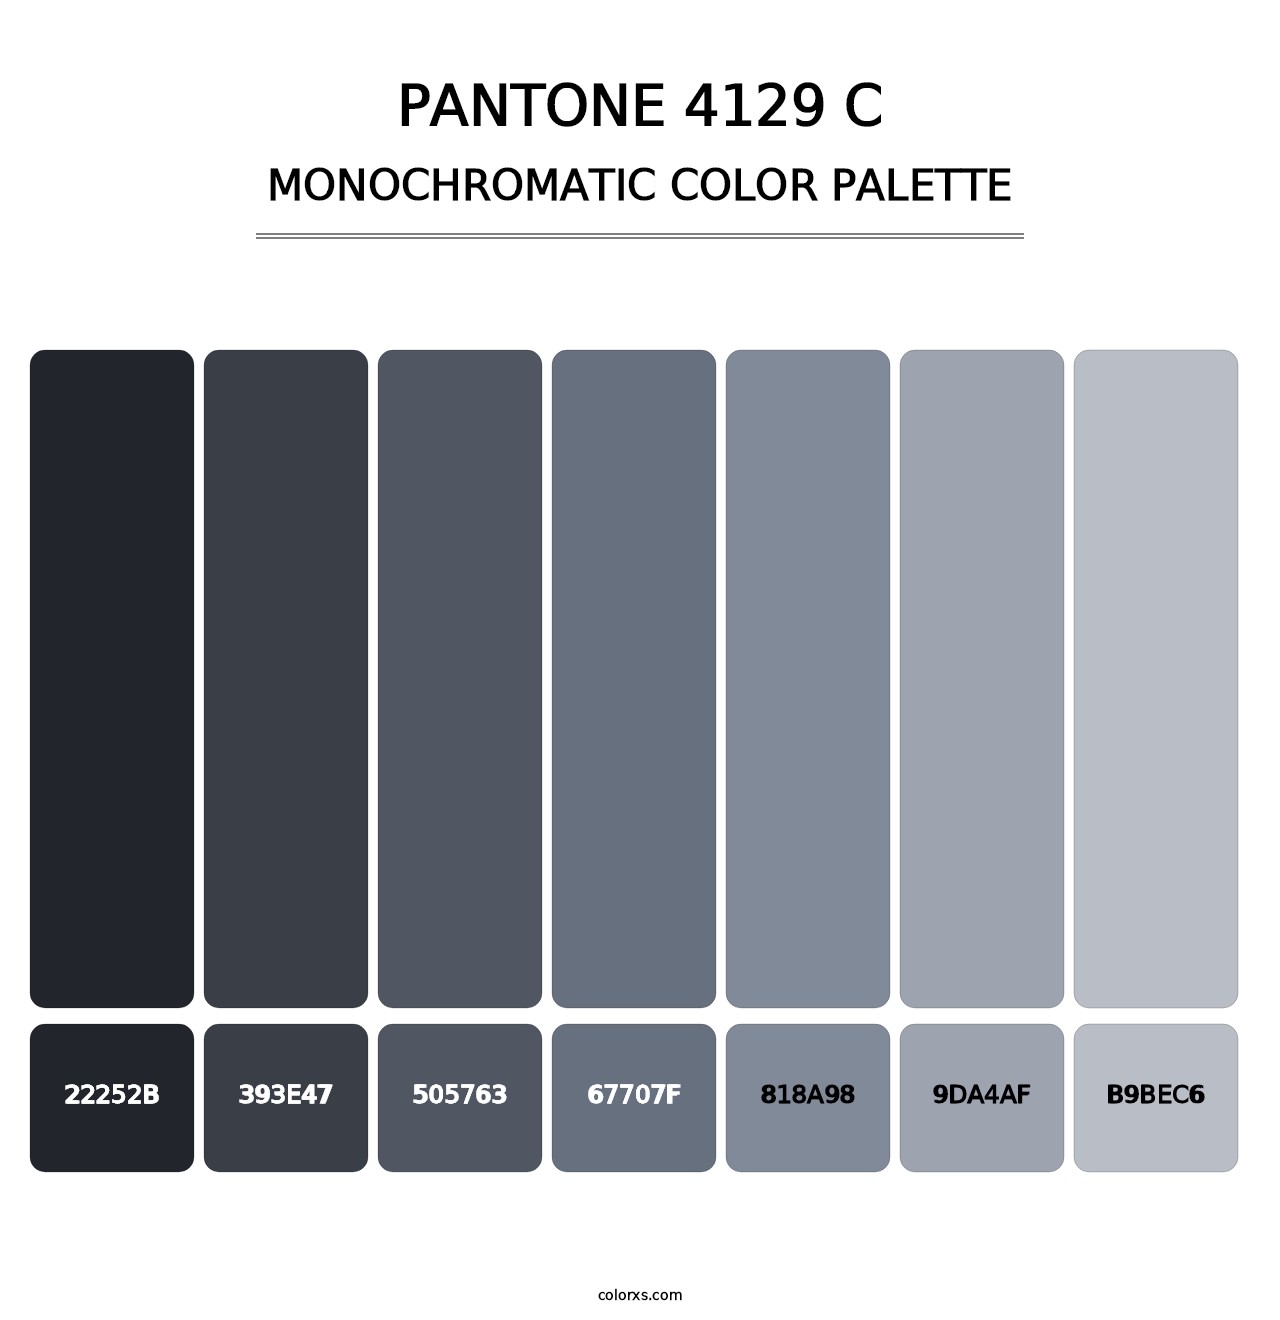 PANTONE 4129 C - Monochromatic Color Palette